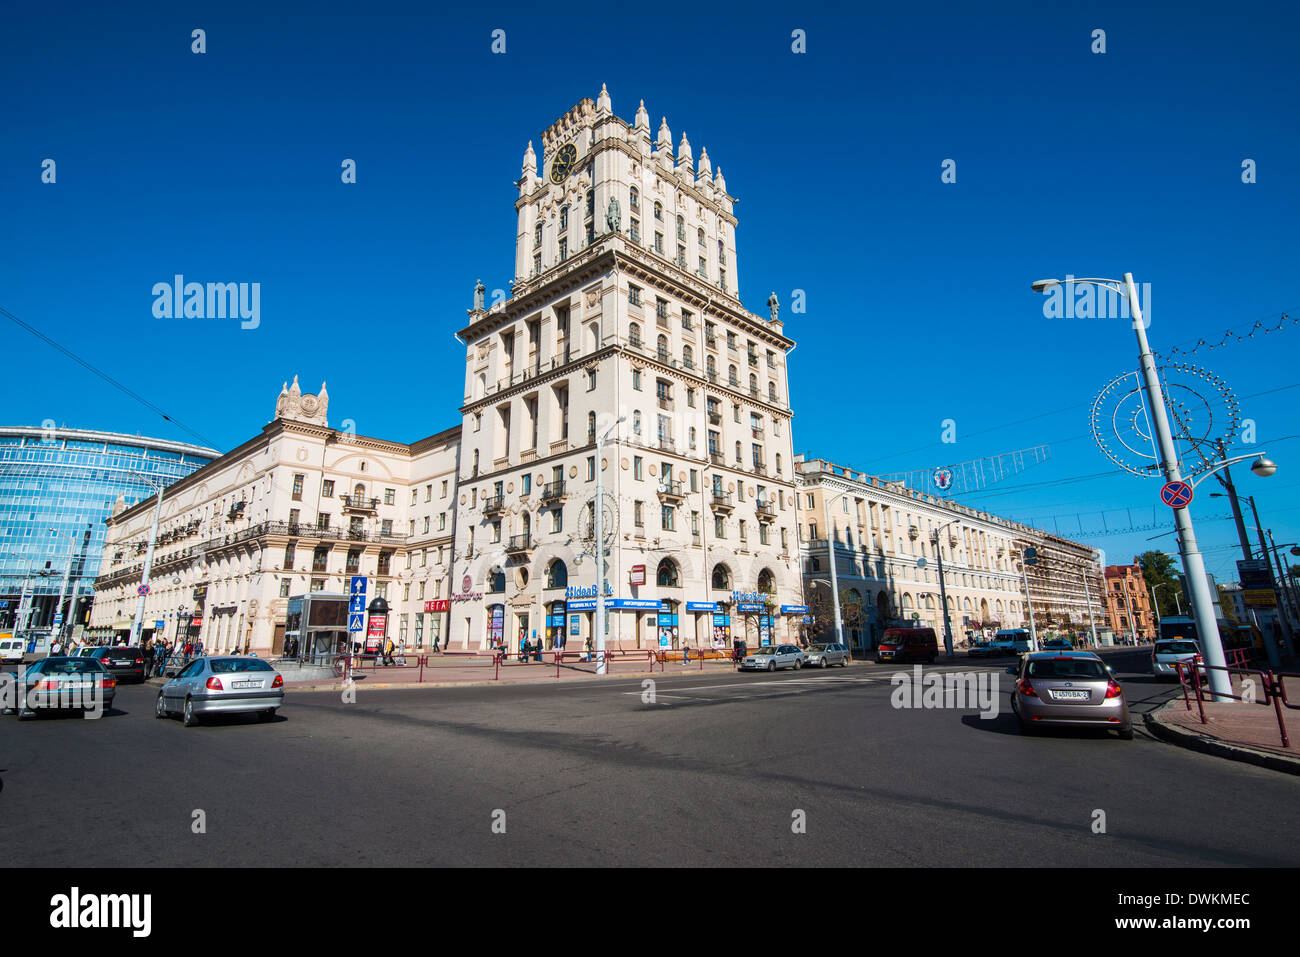 Stalinistische Architektur in Minsk, Belarus, Europa Stockfoto